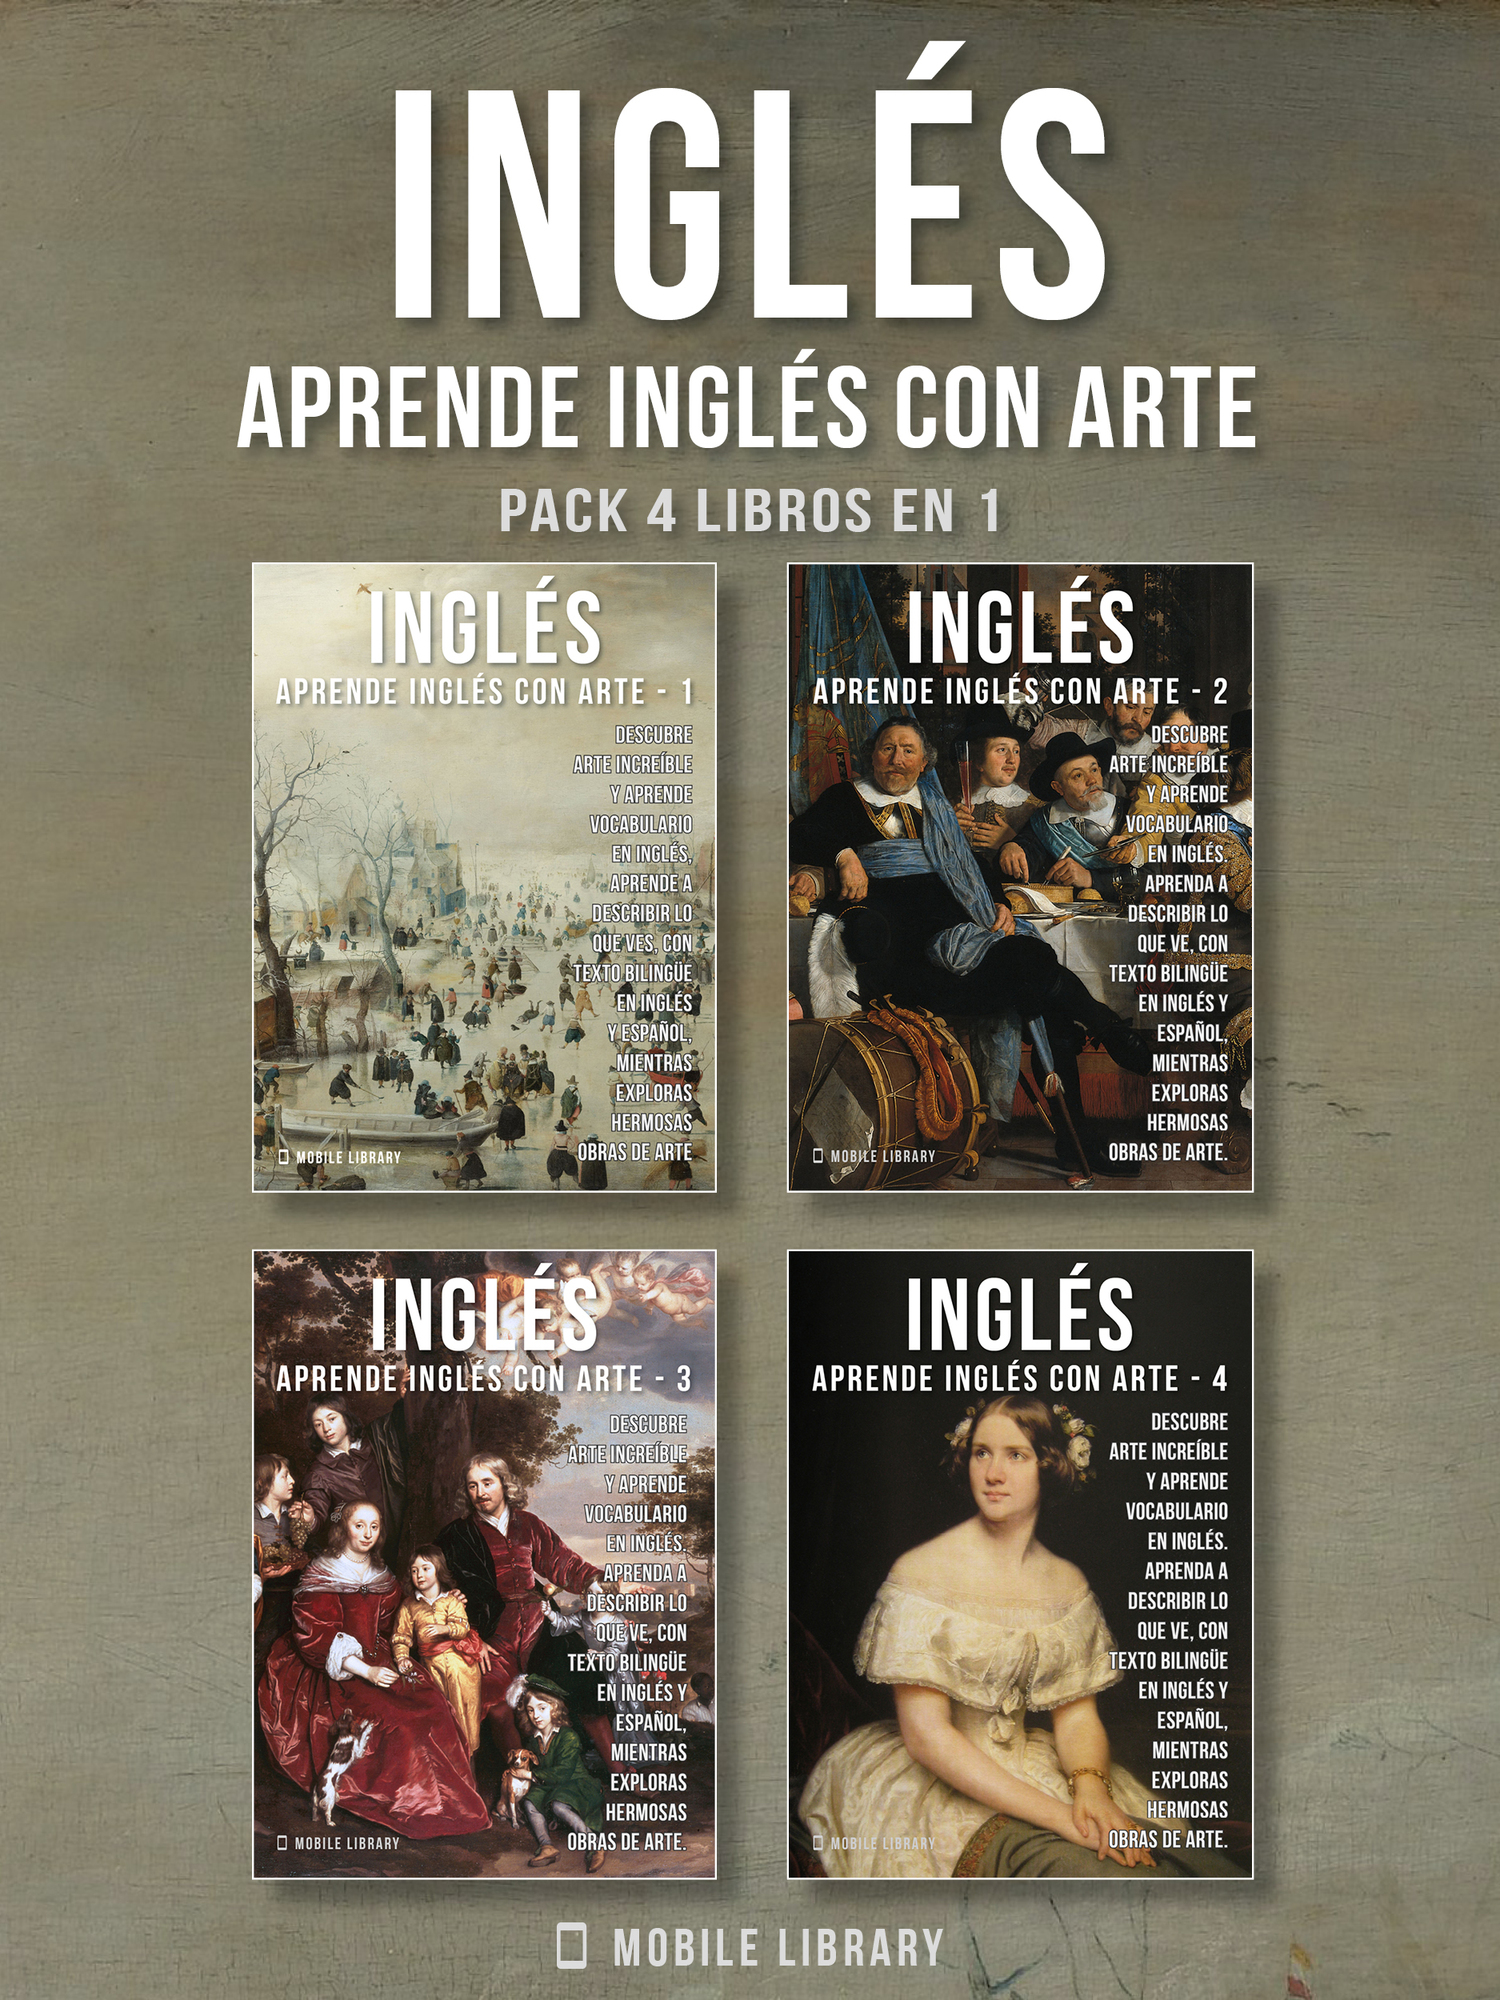 Mobile Library Pack 4 Libros en 1 - Inglés - Aprende Inglés con Arte Aprenda a - photo 1